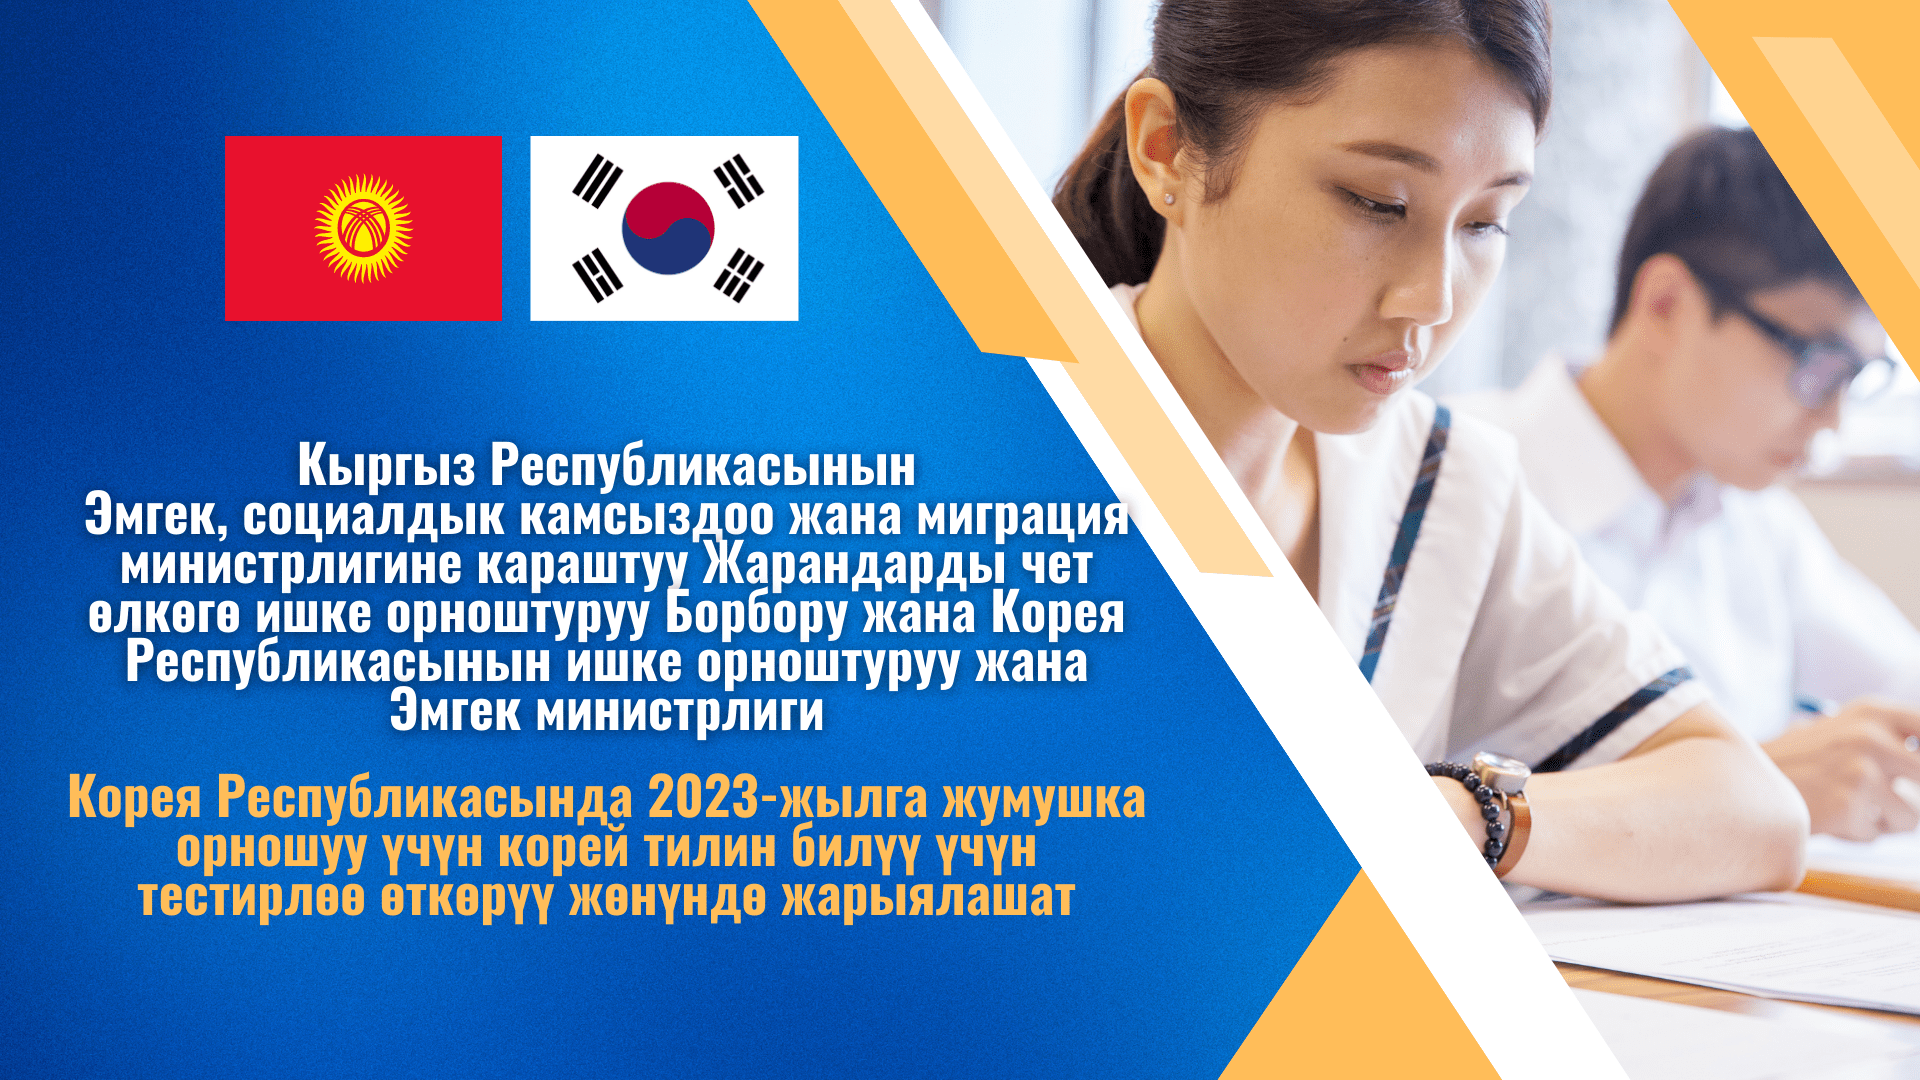 Объявление о проведении дополнительного общего тестирования 2023 году на знание корейского языка для трудоустройства в Республике Корея!